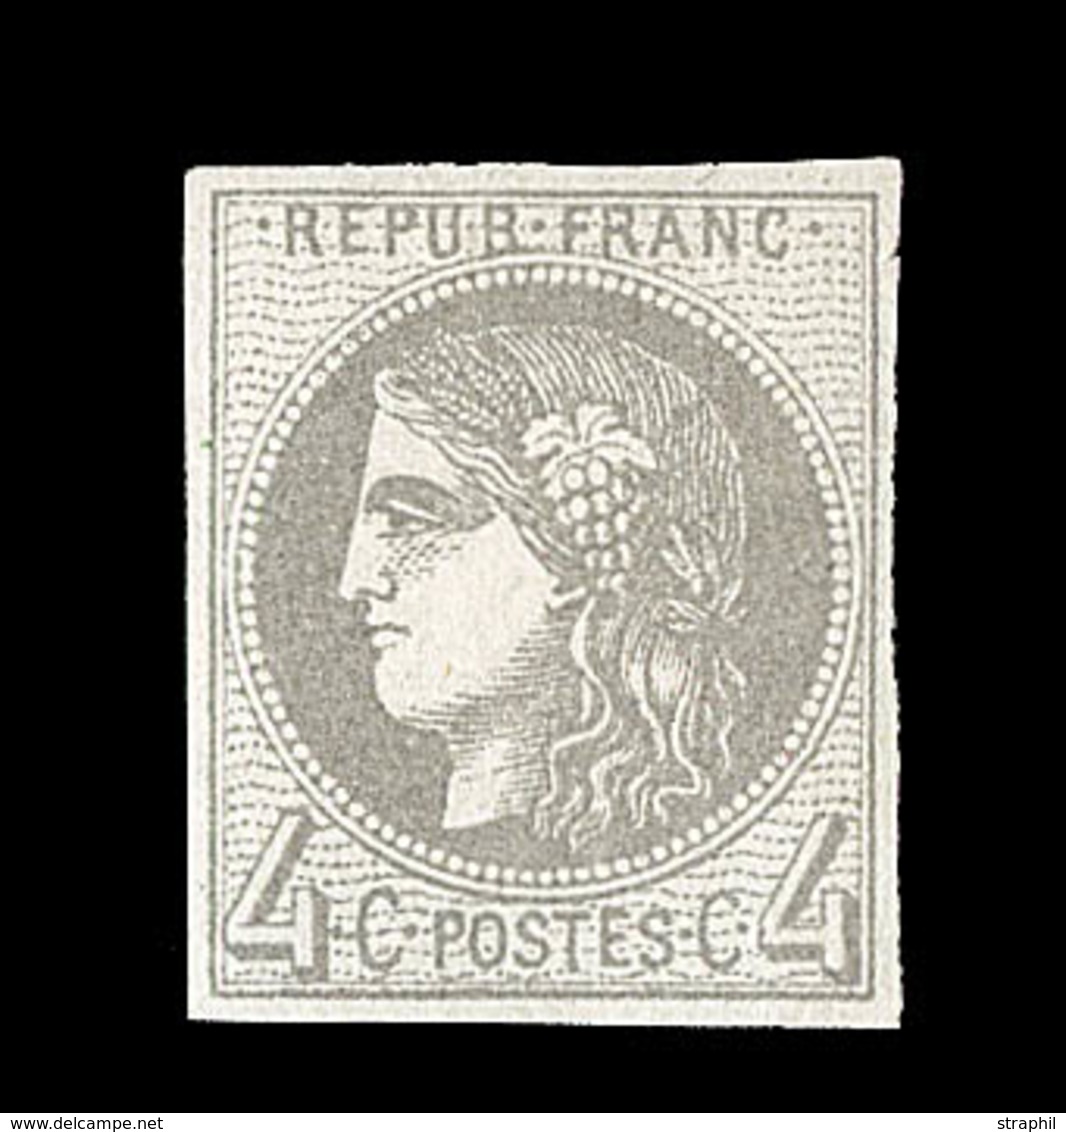 * EMISSION DE BORDEAUX - * - N°41 - 4c Gris - Rep. 2 - Signé A. Brun/Calves - TB - 1870 Bordeaux Printing